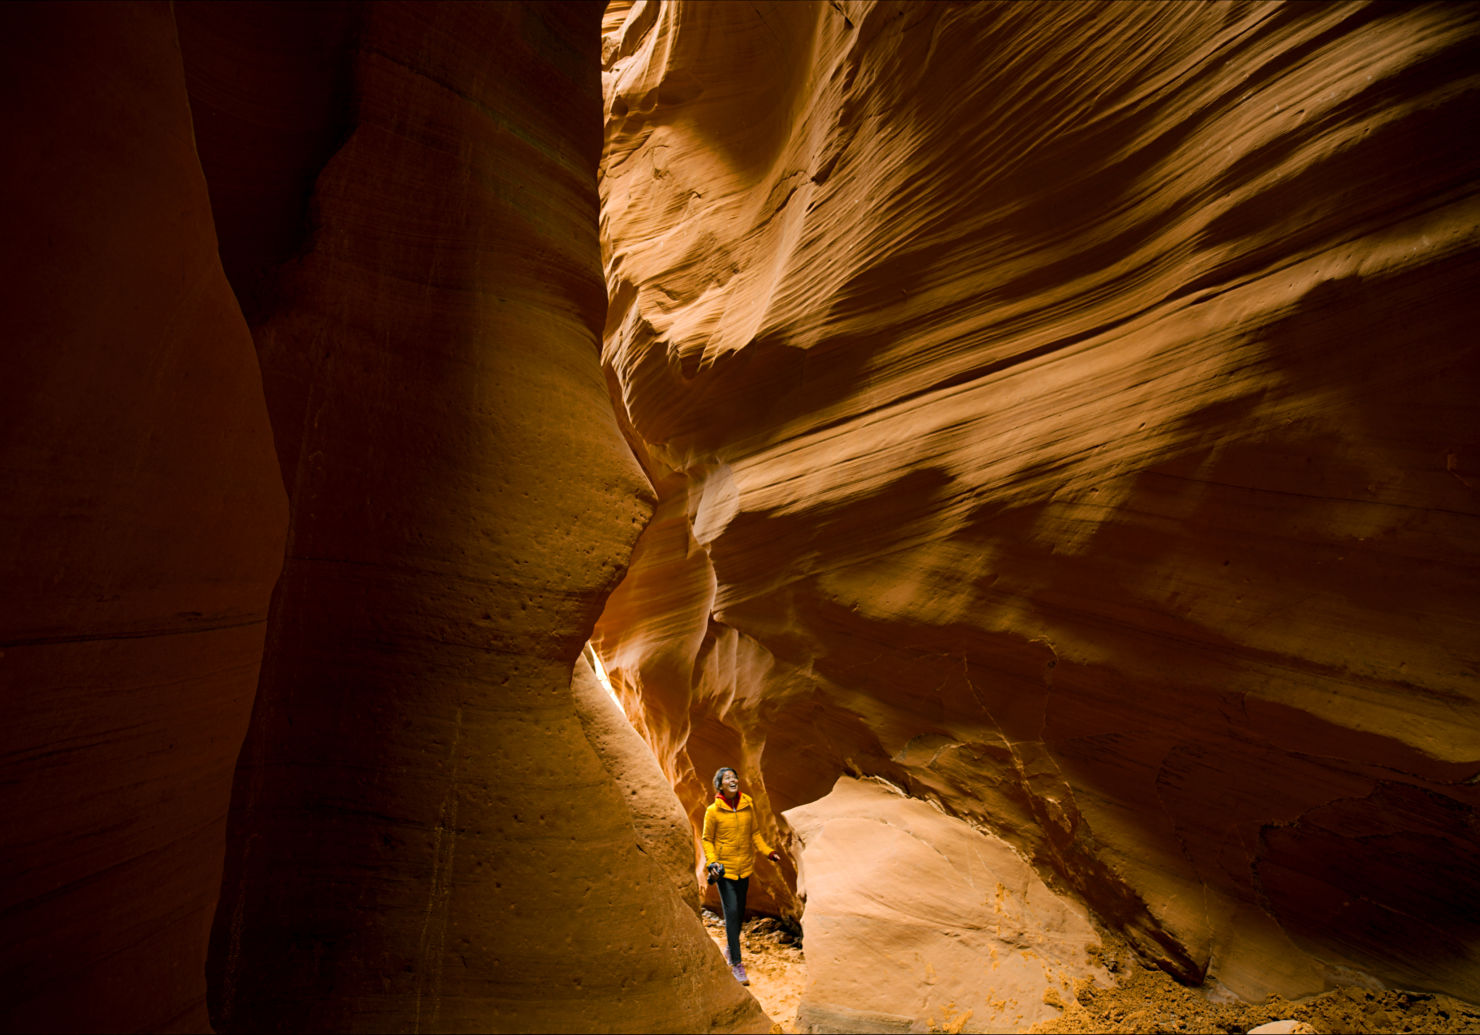 Descubre los lugares más hermosos de Estados Unidos en este documental - 37-antelope-canyon-ariel-tweto-marvels-at-the-undulating-sandstone-formations-in-antelope-canyon-near-page-arizona